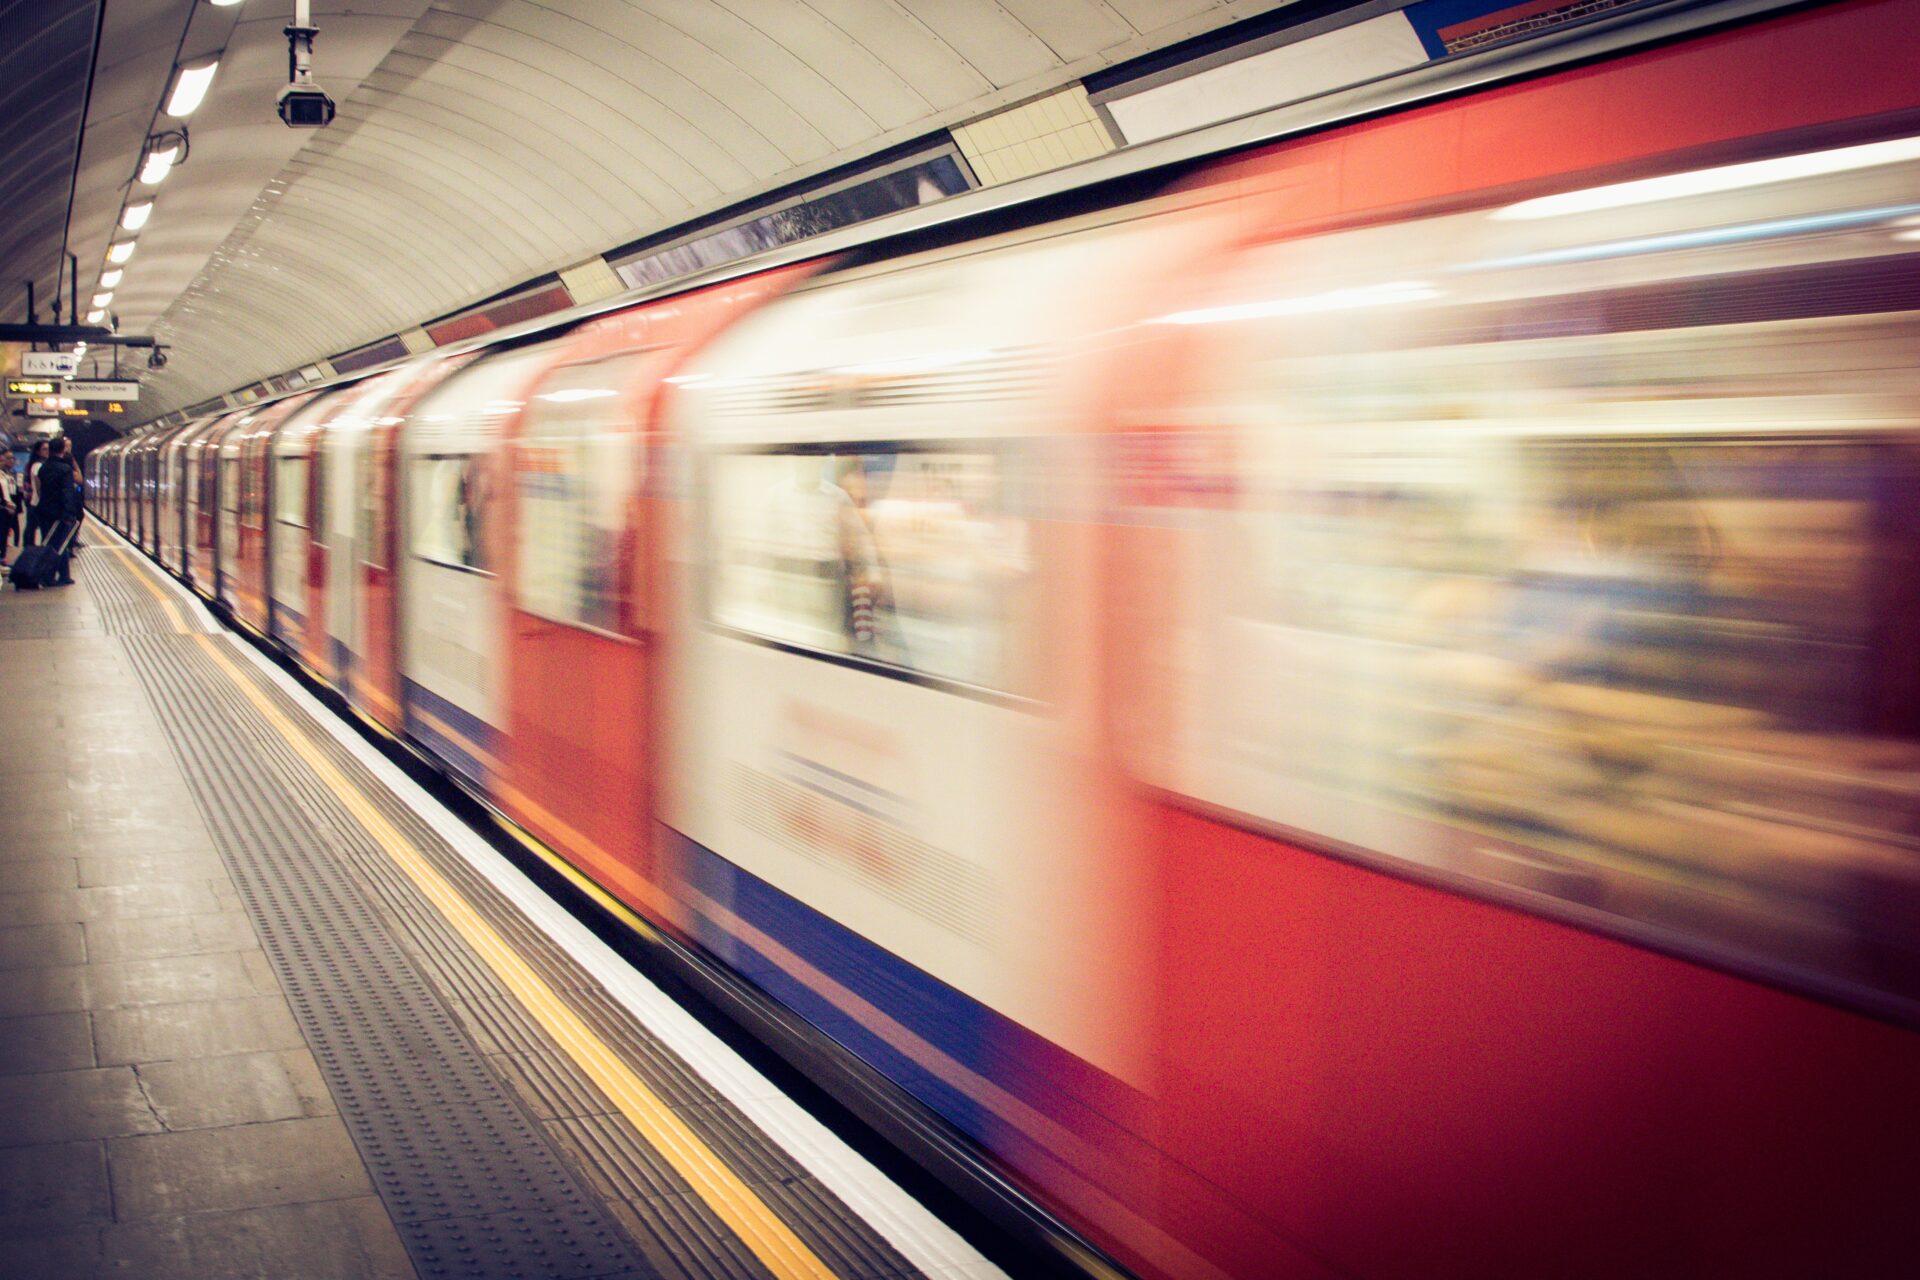 London underground train (Photo by Dan Roizer on Unsplash)